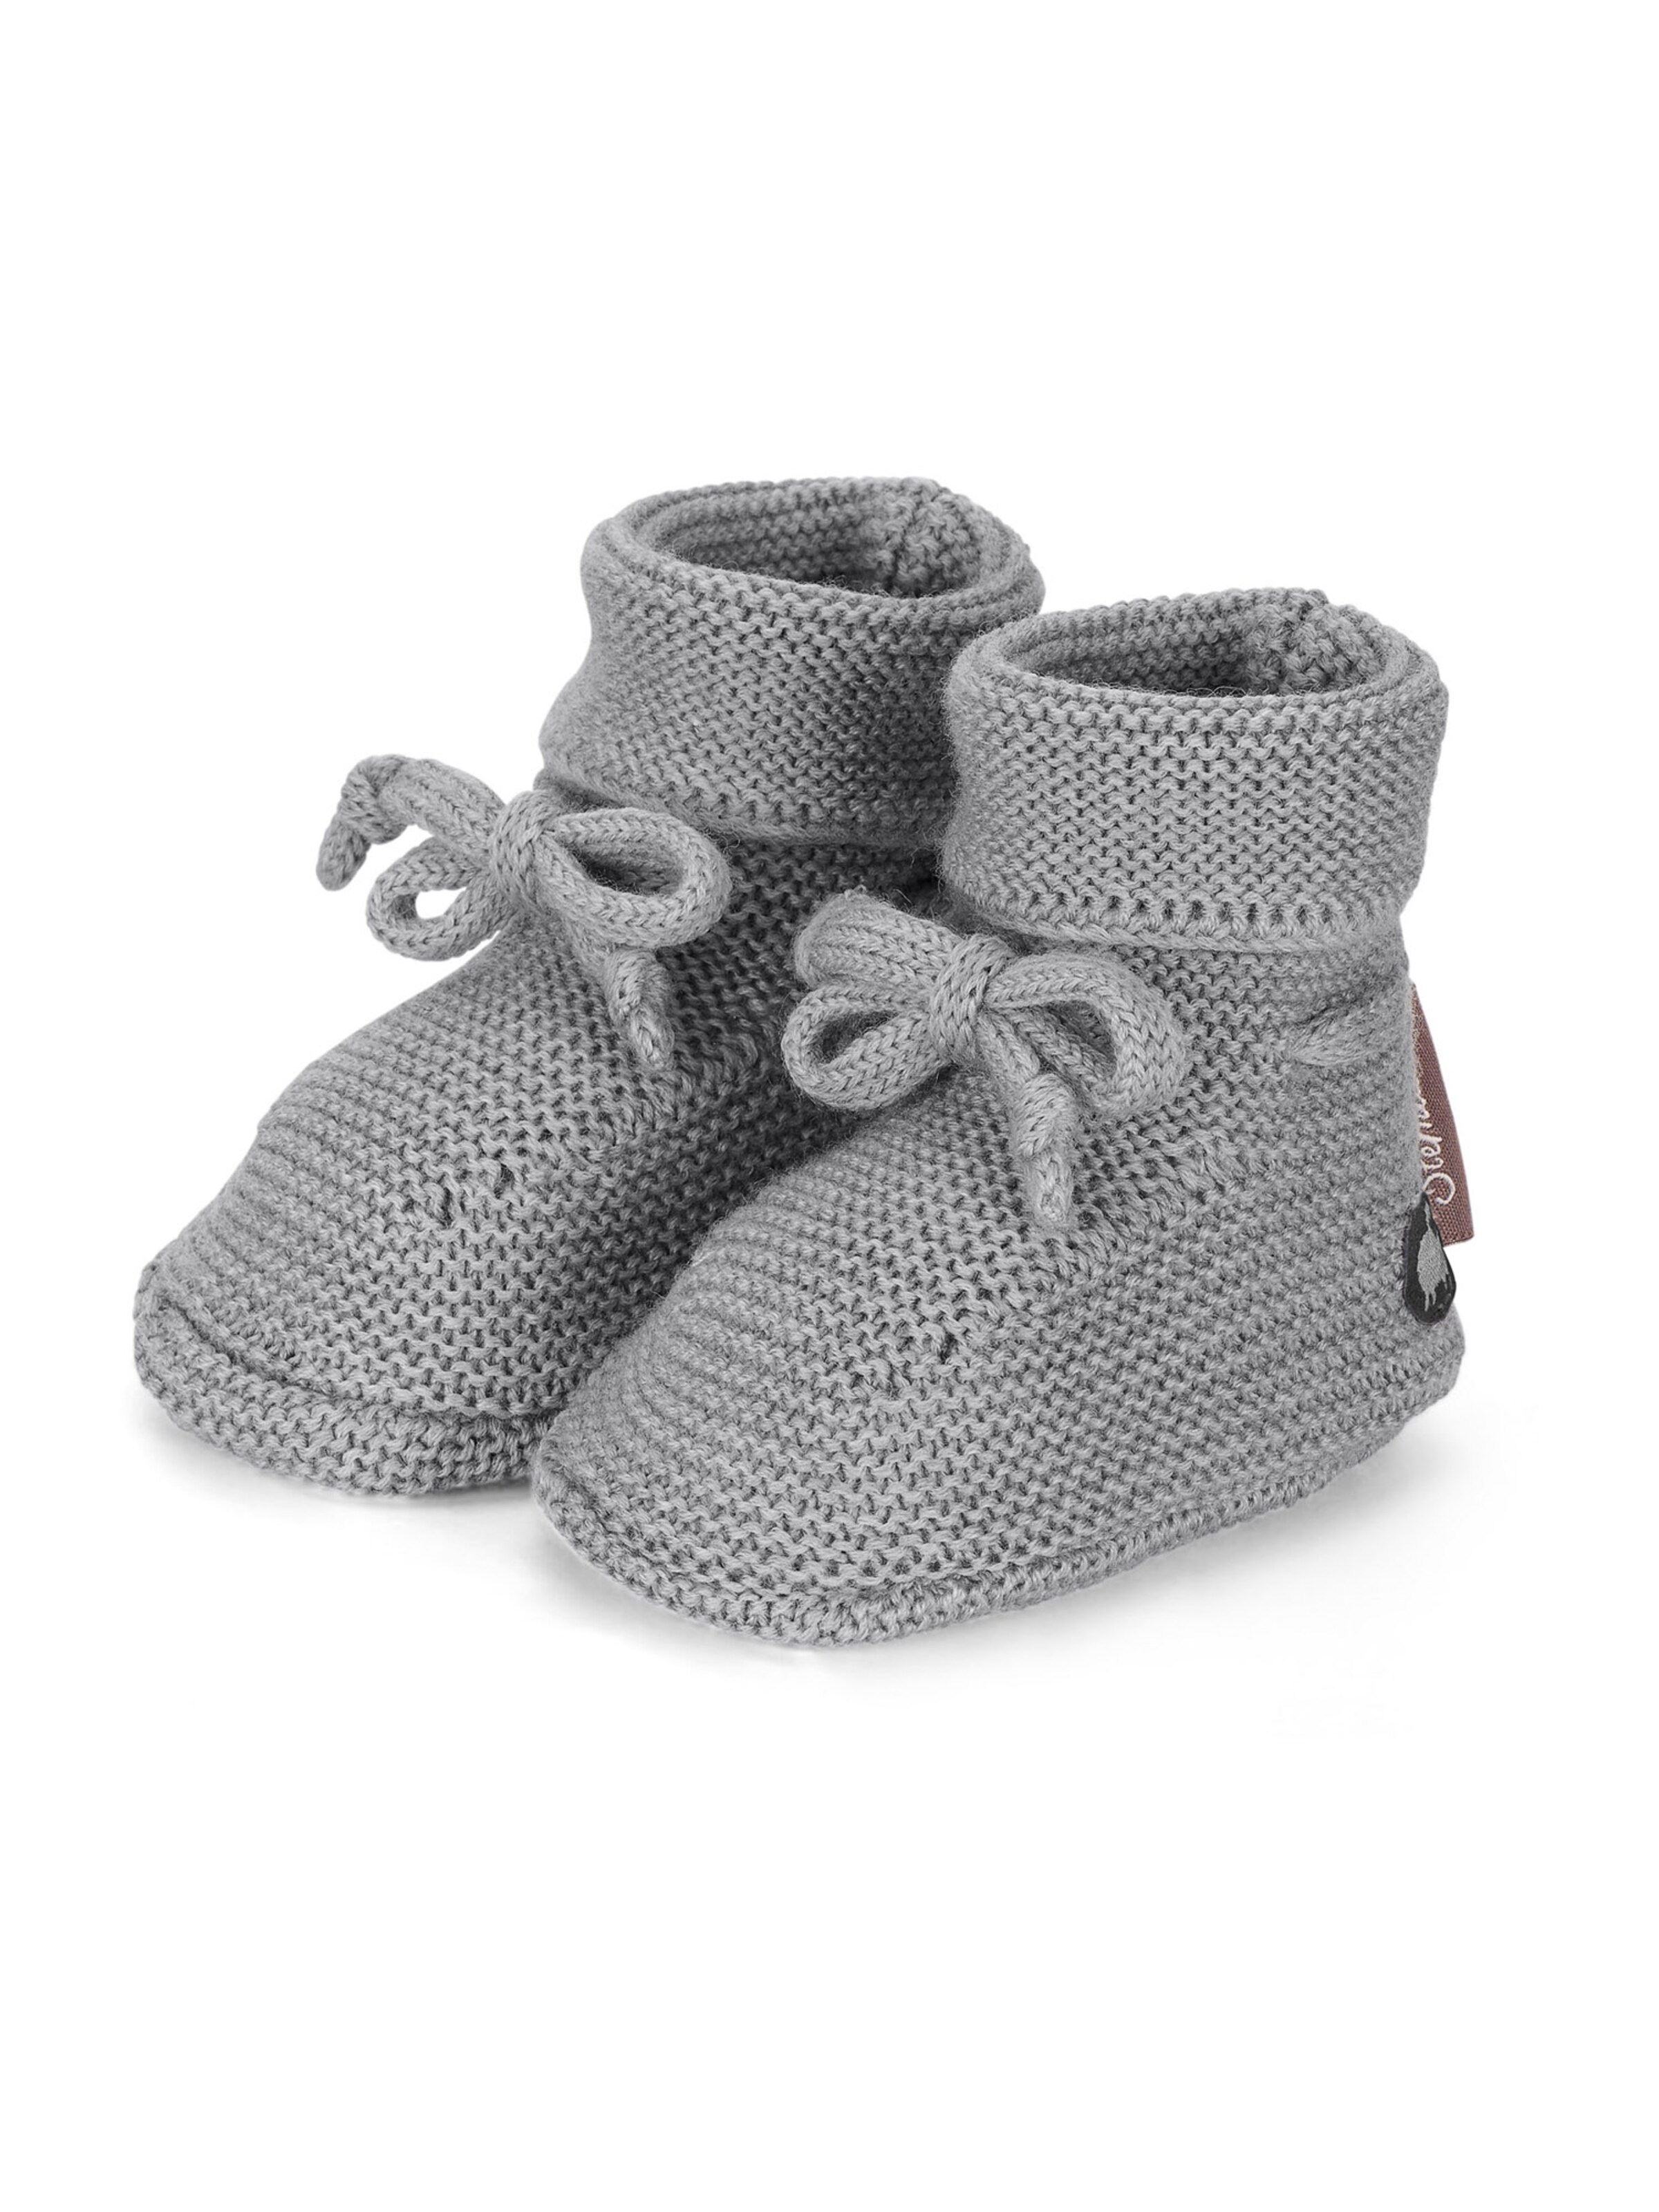 Kinder Schuhe STERNTALER Newborn in Grau - MQ08596